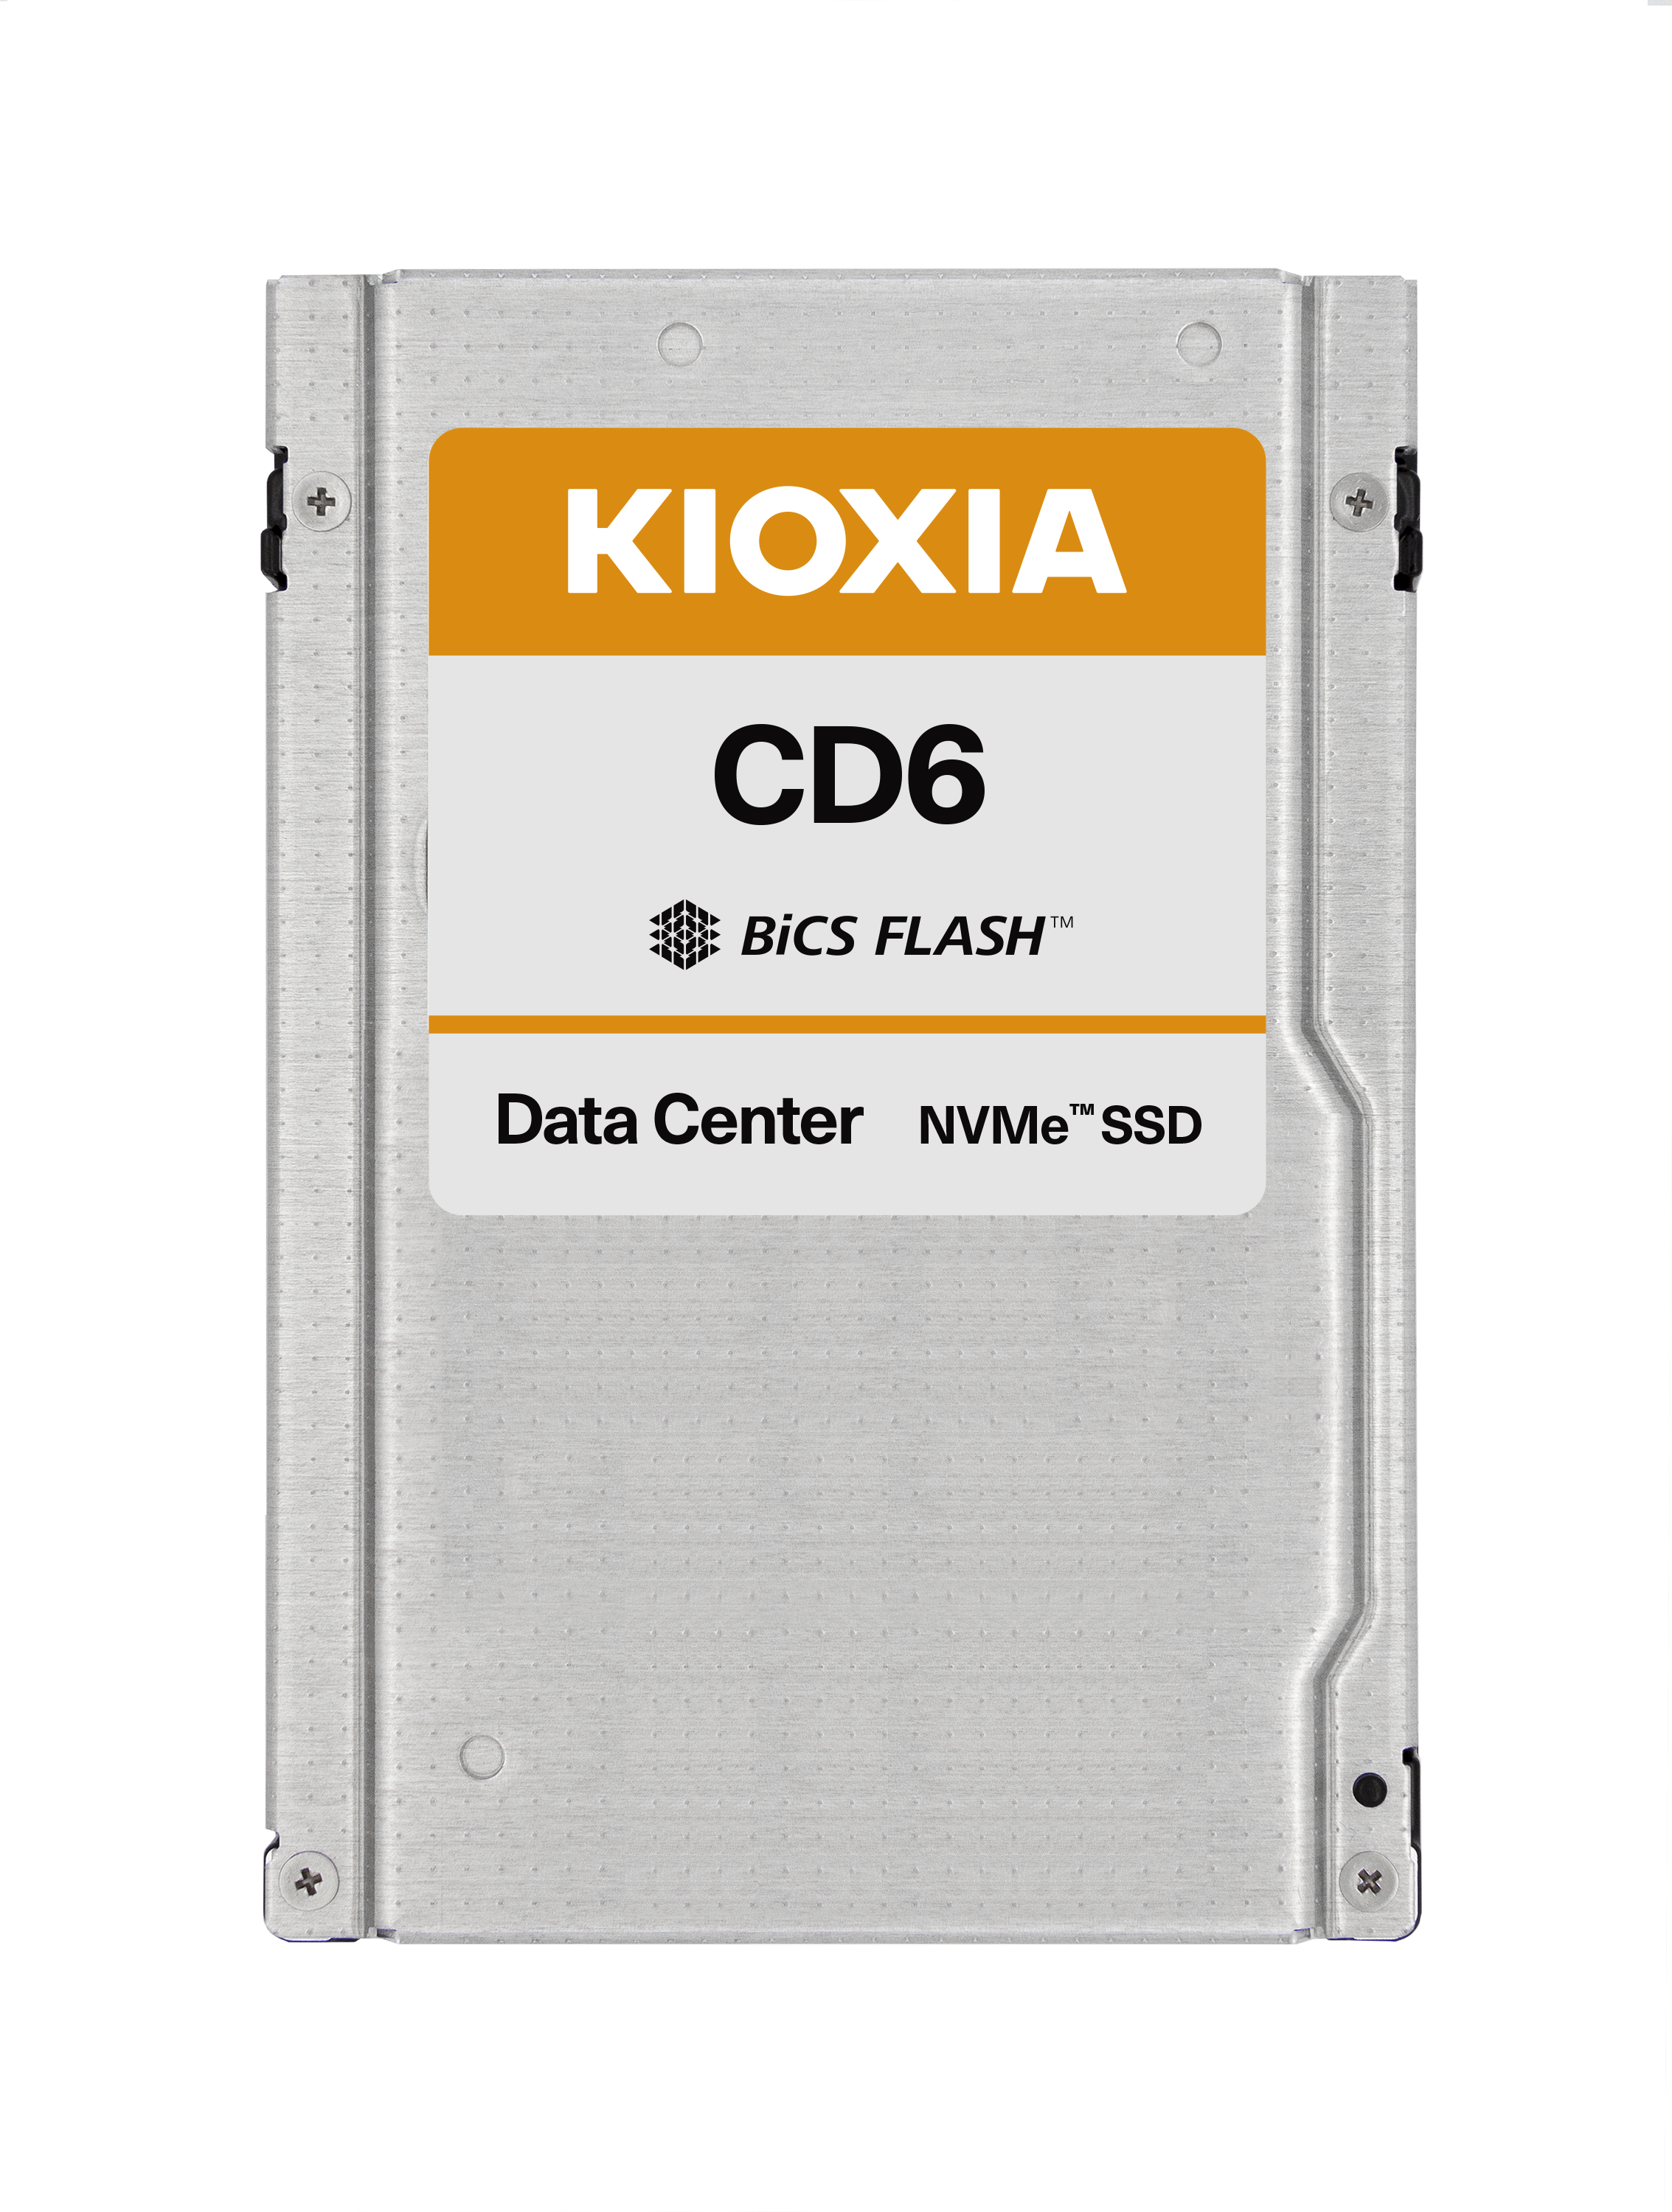 Kioxia CD6 KCD61LUL3T84 3.84TB PCIe Gen 4.0 x4 8GB/s 2.5" Read Intensive SSD